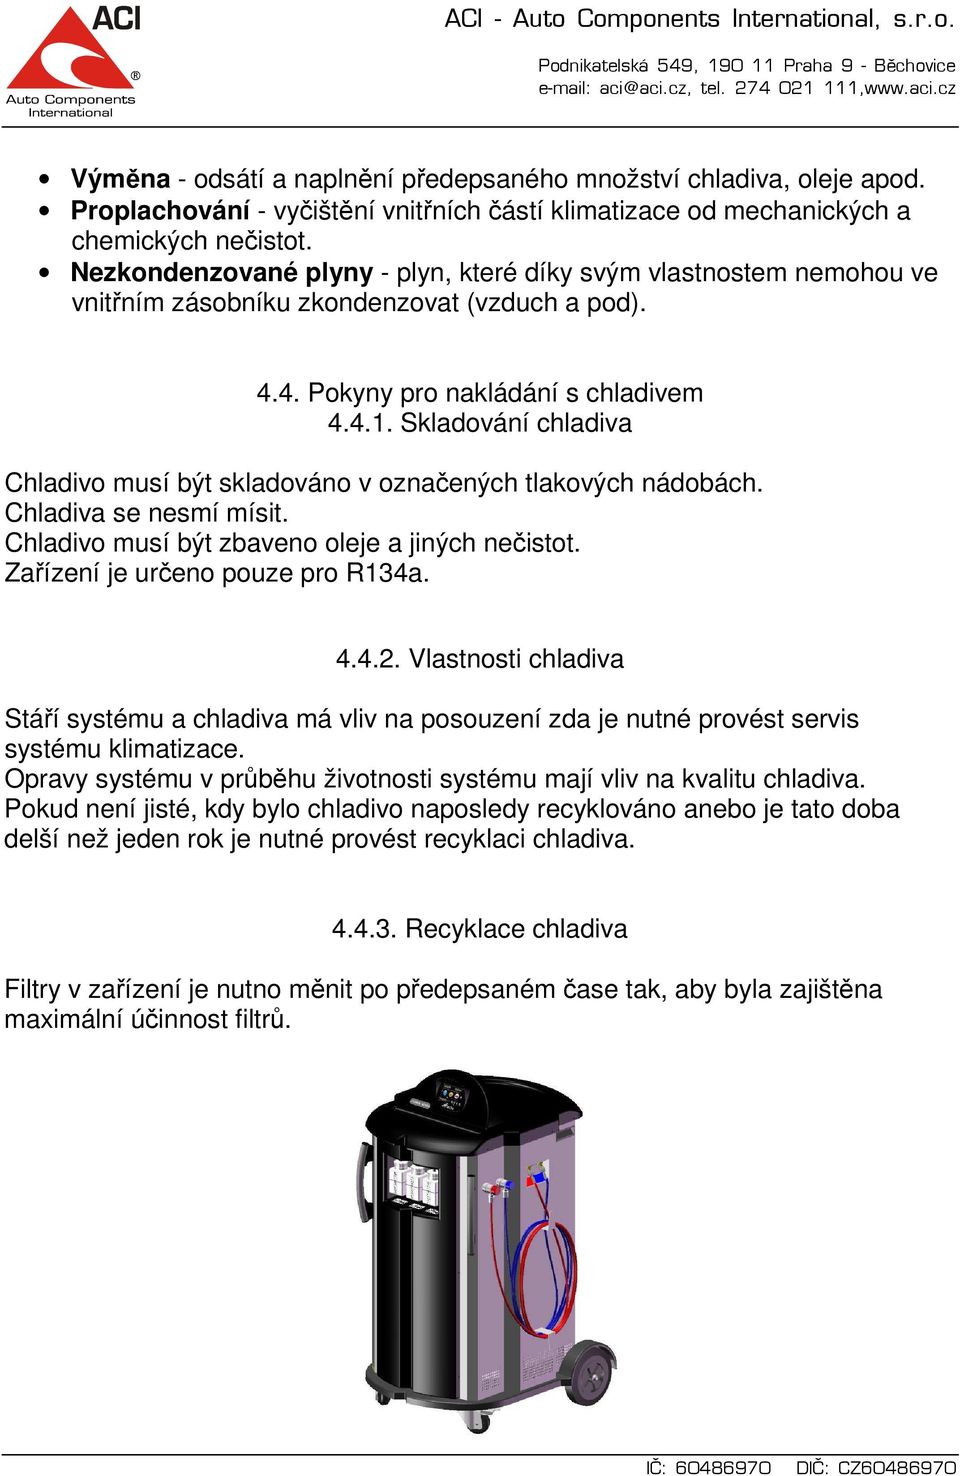 Skladování chladiva Chladivo musí být skladováno v označených tlakových nádobách. Chladiva se nesmí mísit. Chladivo musí být zbaveno oleje a jiných nečistot. Zařízení je určeno pouze pro R134a. 4.4.2.